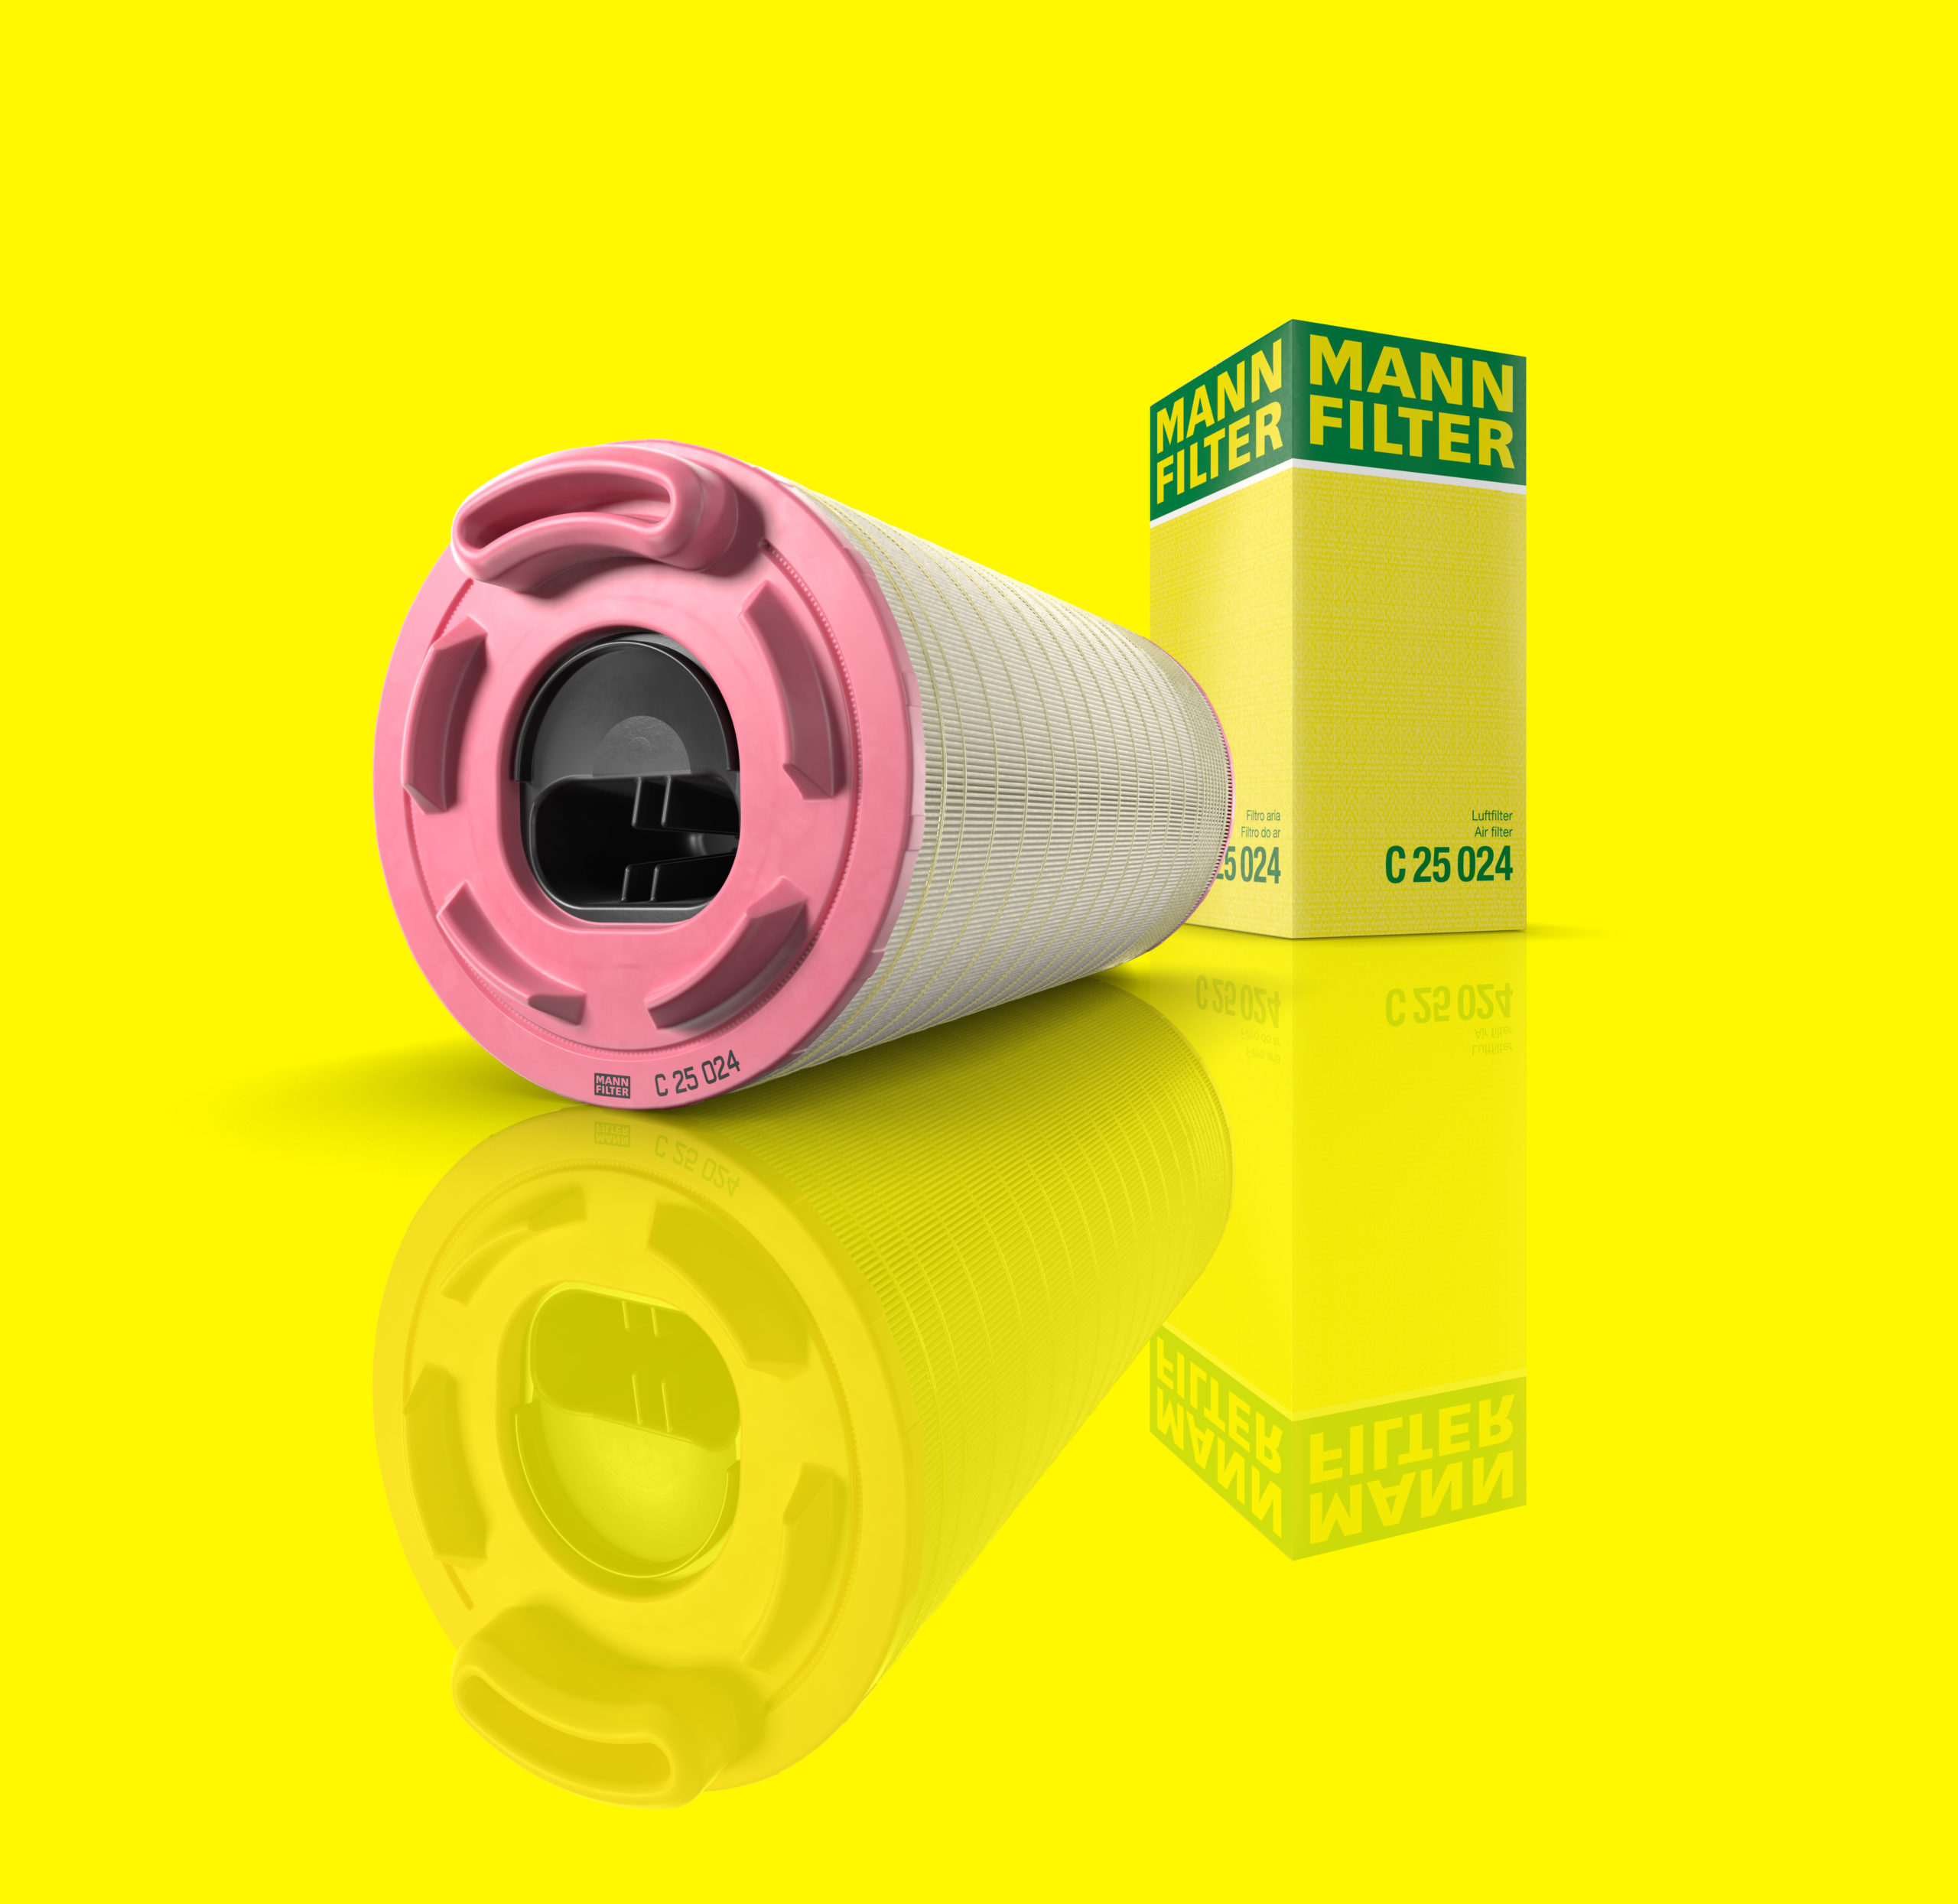 Ein länglicher Filter mit rosa Akkzent vor gelben Hintergrund und spiegelnder Boden neben der Verpackung